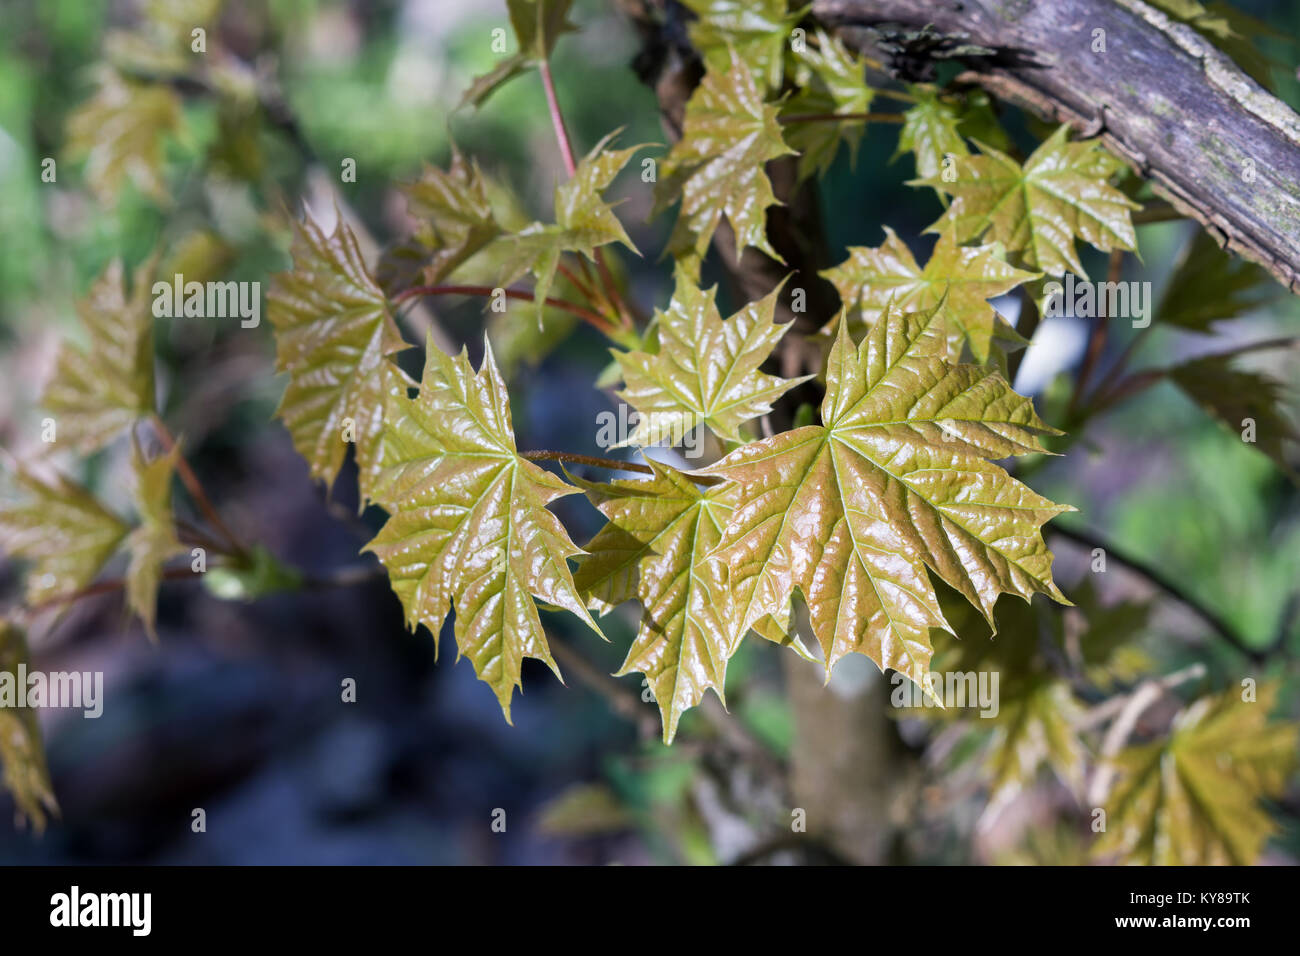 Sehr junge frische Blätter Ahorn (Acer negundo) im Frühjahr Wald. Die Blätter sind von der Sonne hervorgehoben. Natürliche Hintergrund. Selektive konzentrieren. Stockfoto